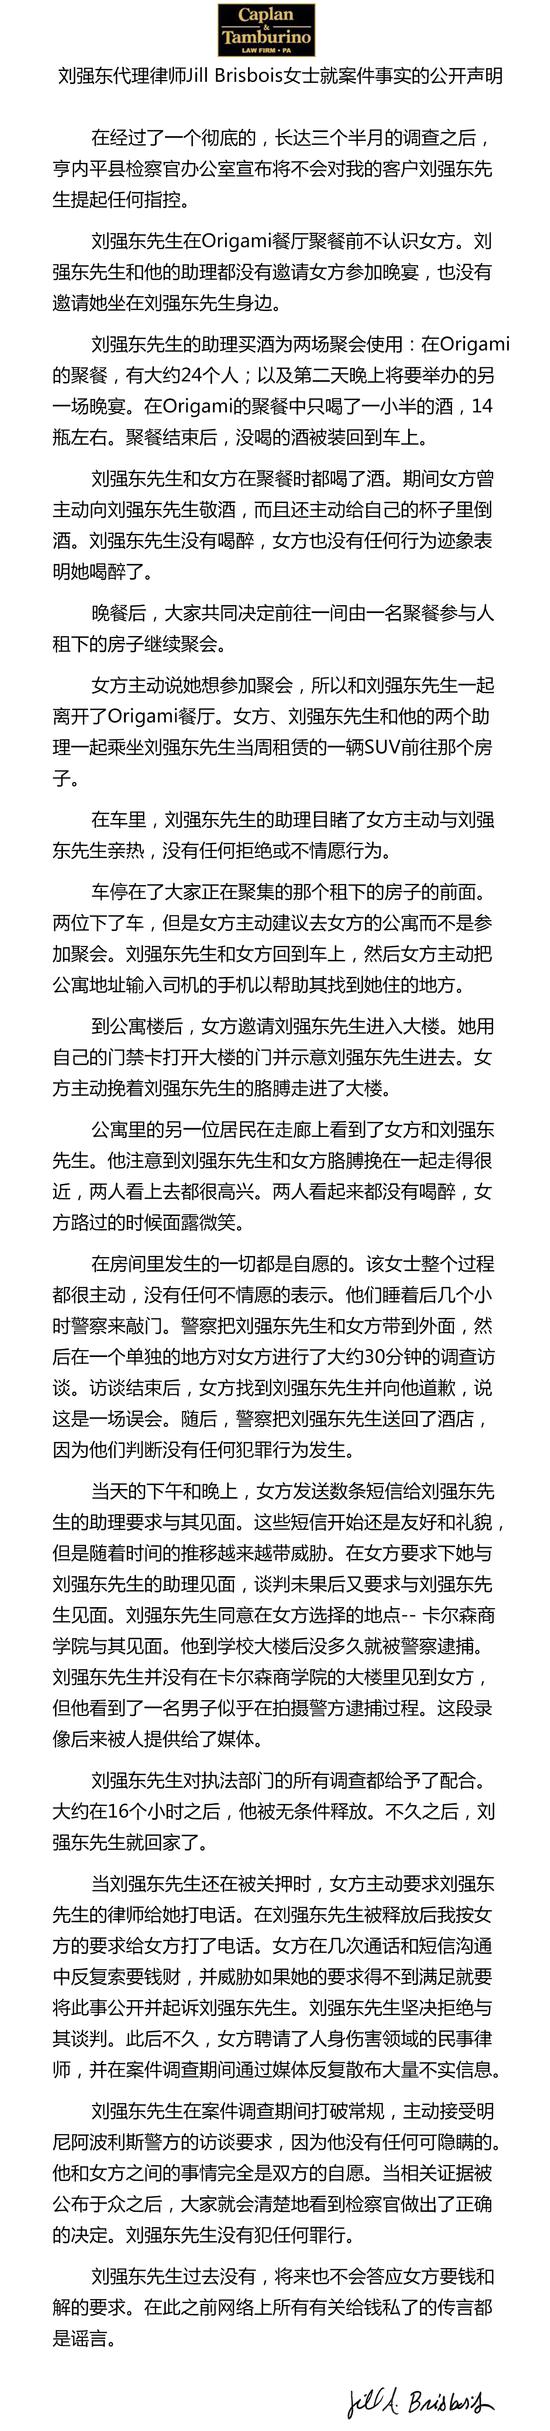 美国检方决定不予起诉刘强东 该案正式结案